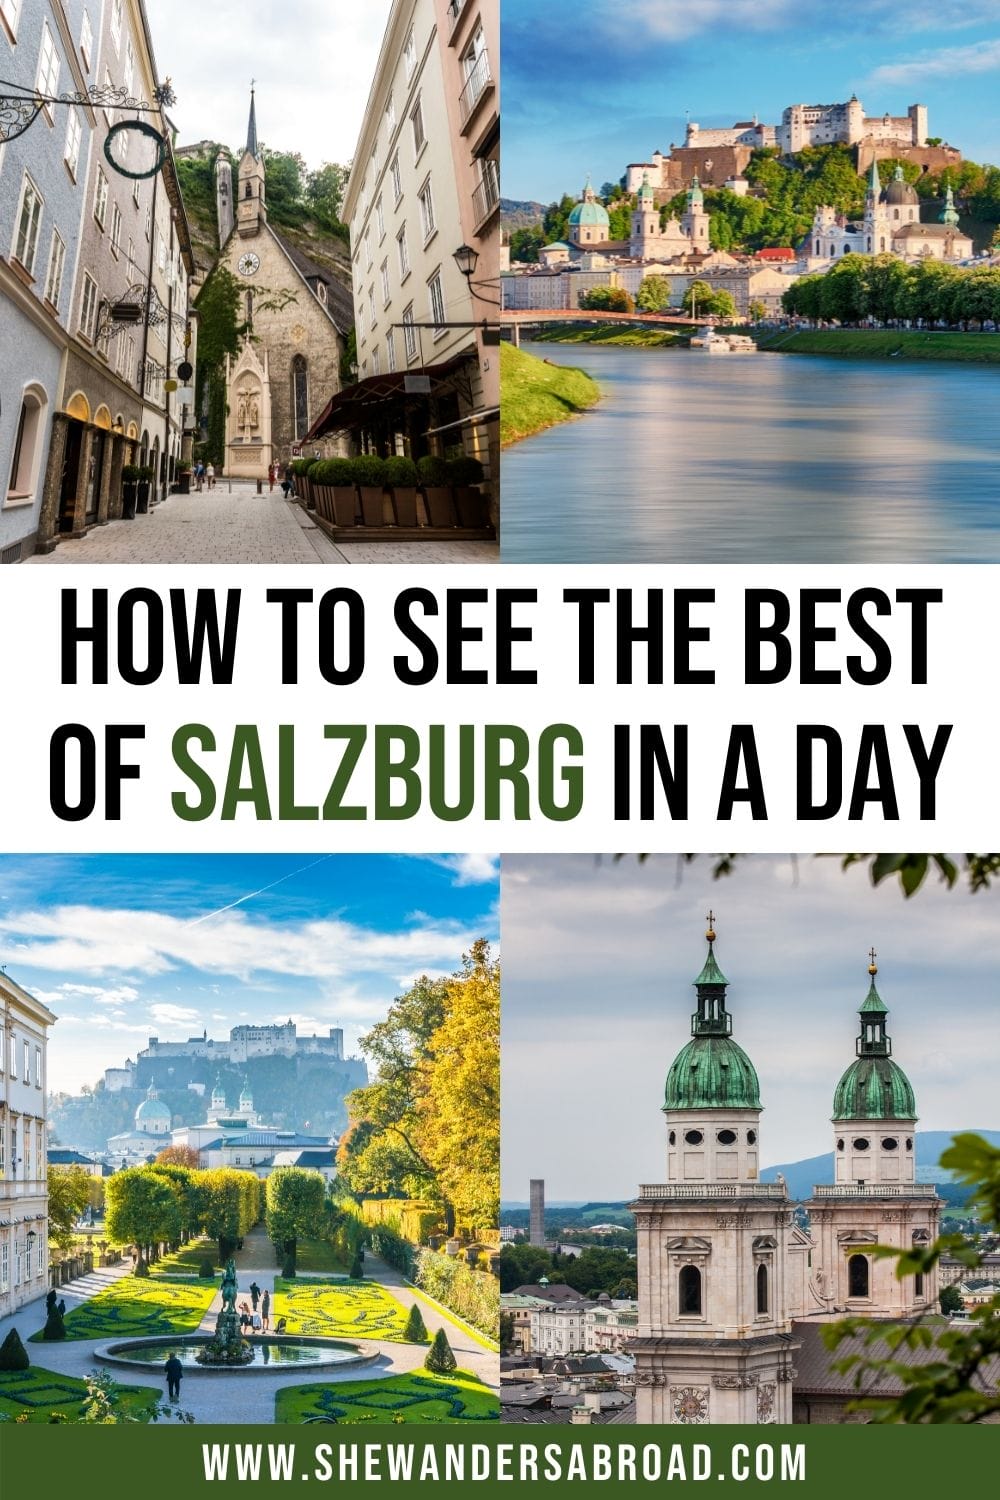 오스트리아 잘츠부르크에서 하루를 보내는 방법